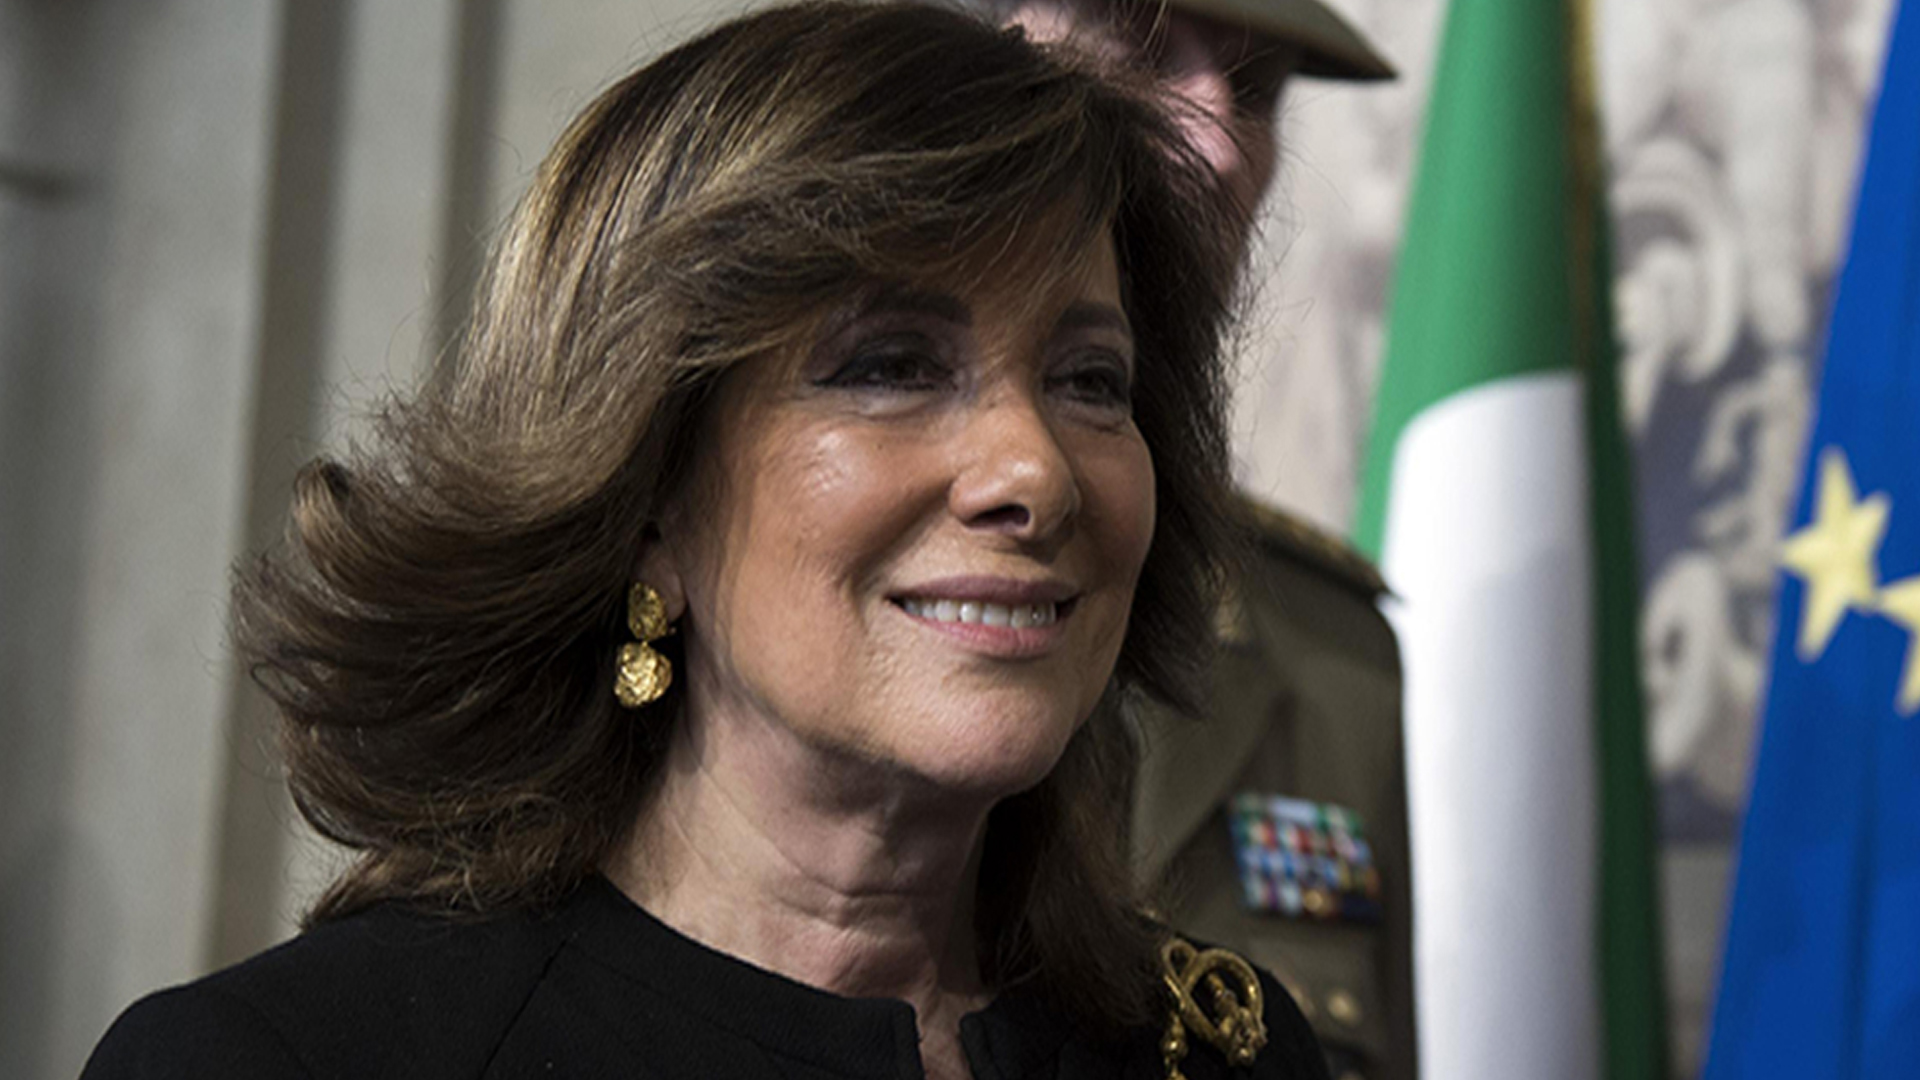 Maria Elisabetta Alberti, coniugata Casellati, è una politica italiana, dal 24 marzo 2018 presidente del Senato della Repubblica nella XVIII legislatura.